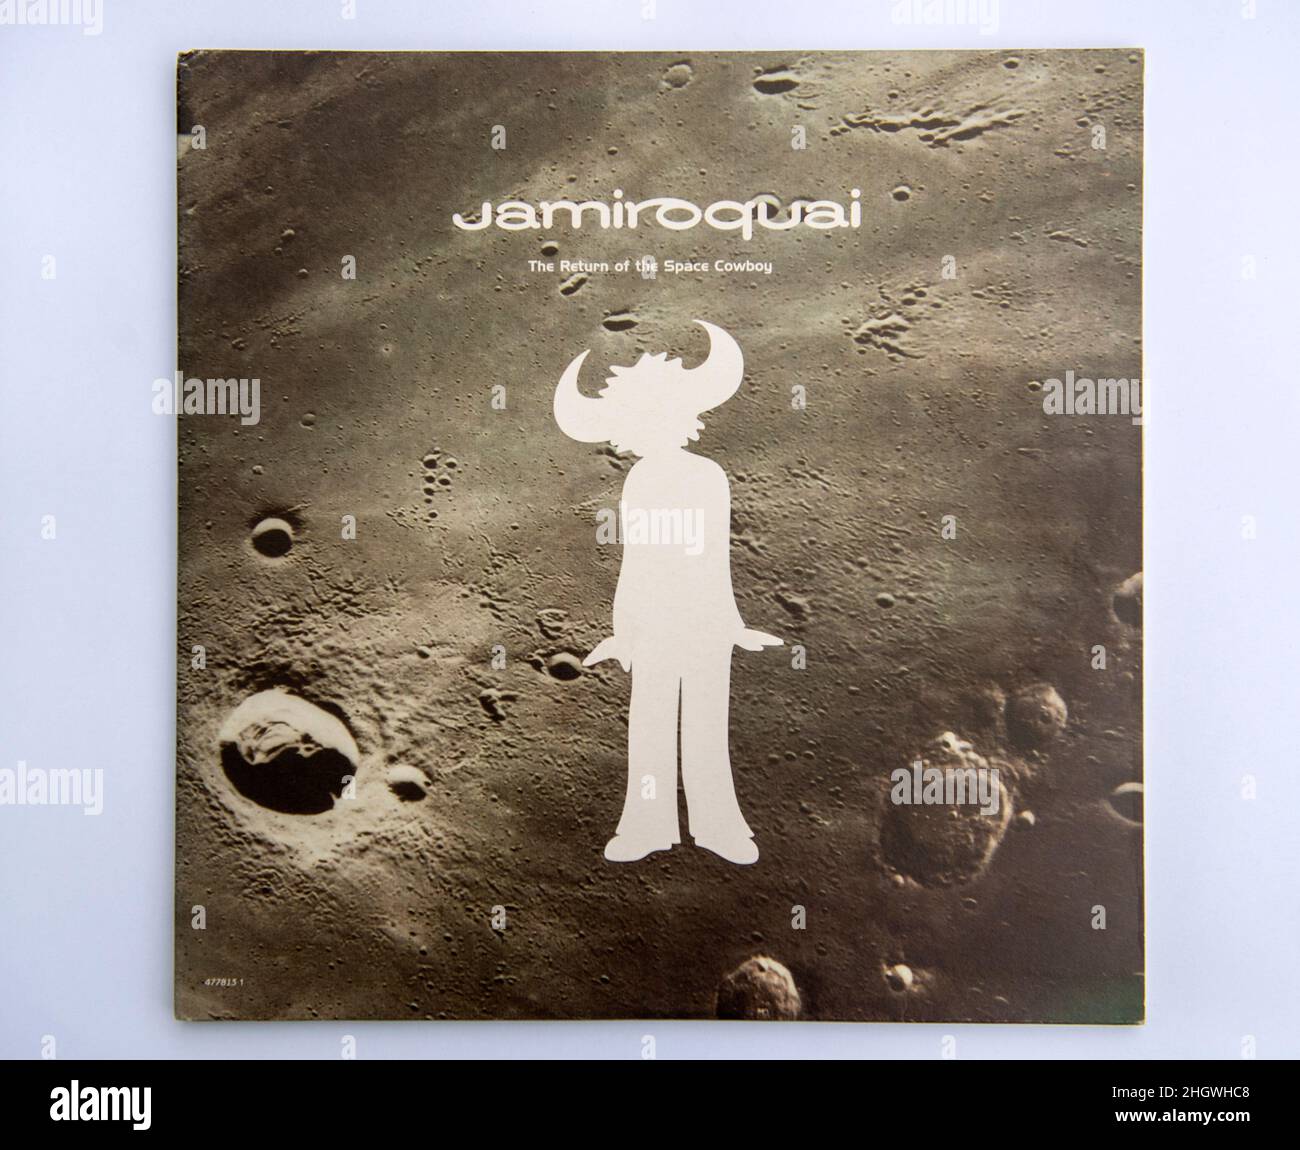 Copertina LP del Return of the Space Cowboy, il secondo album in studio del  gruppo musicale jazz britannico Jamiroquai, uscito nel 1994 Foto stock -  Alamy